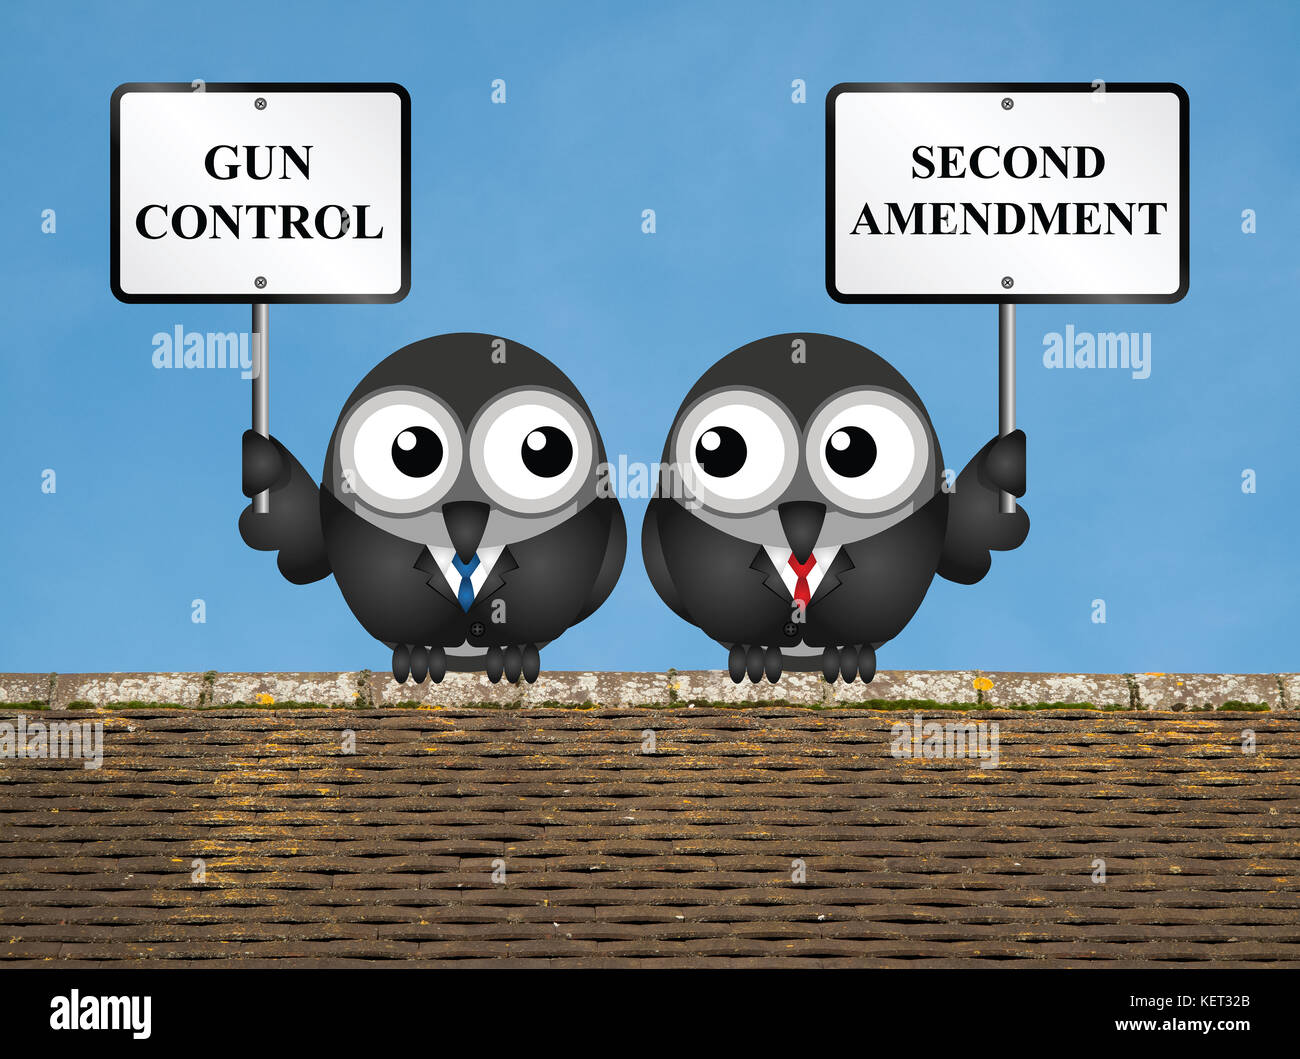 Il controllo dell'arma versi usa secondo emendamento e il diritto di tenere e portare armi Foto Stock